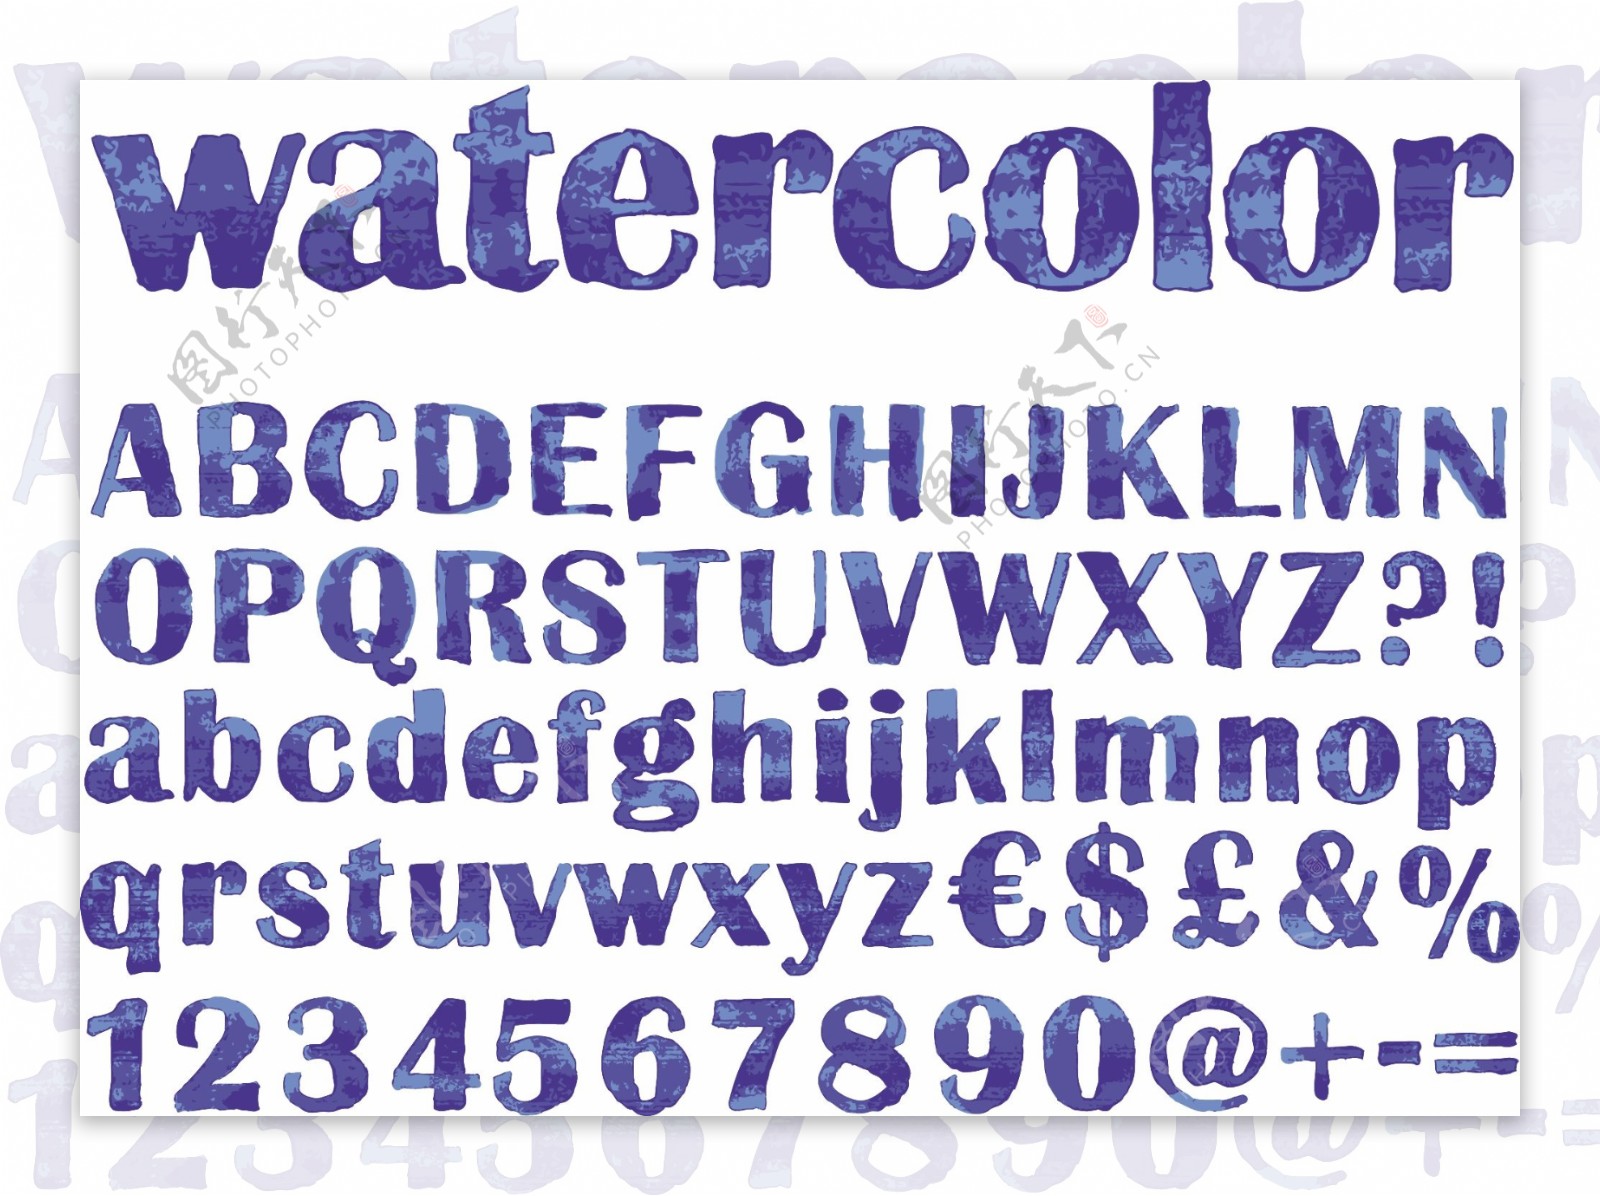 蓝色水彩字体设计矢量素材